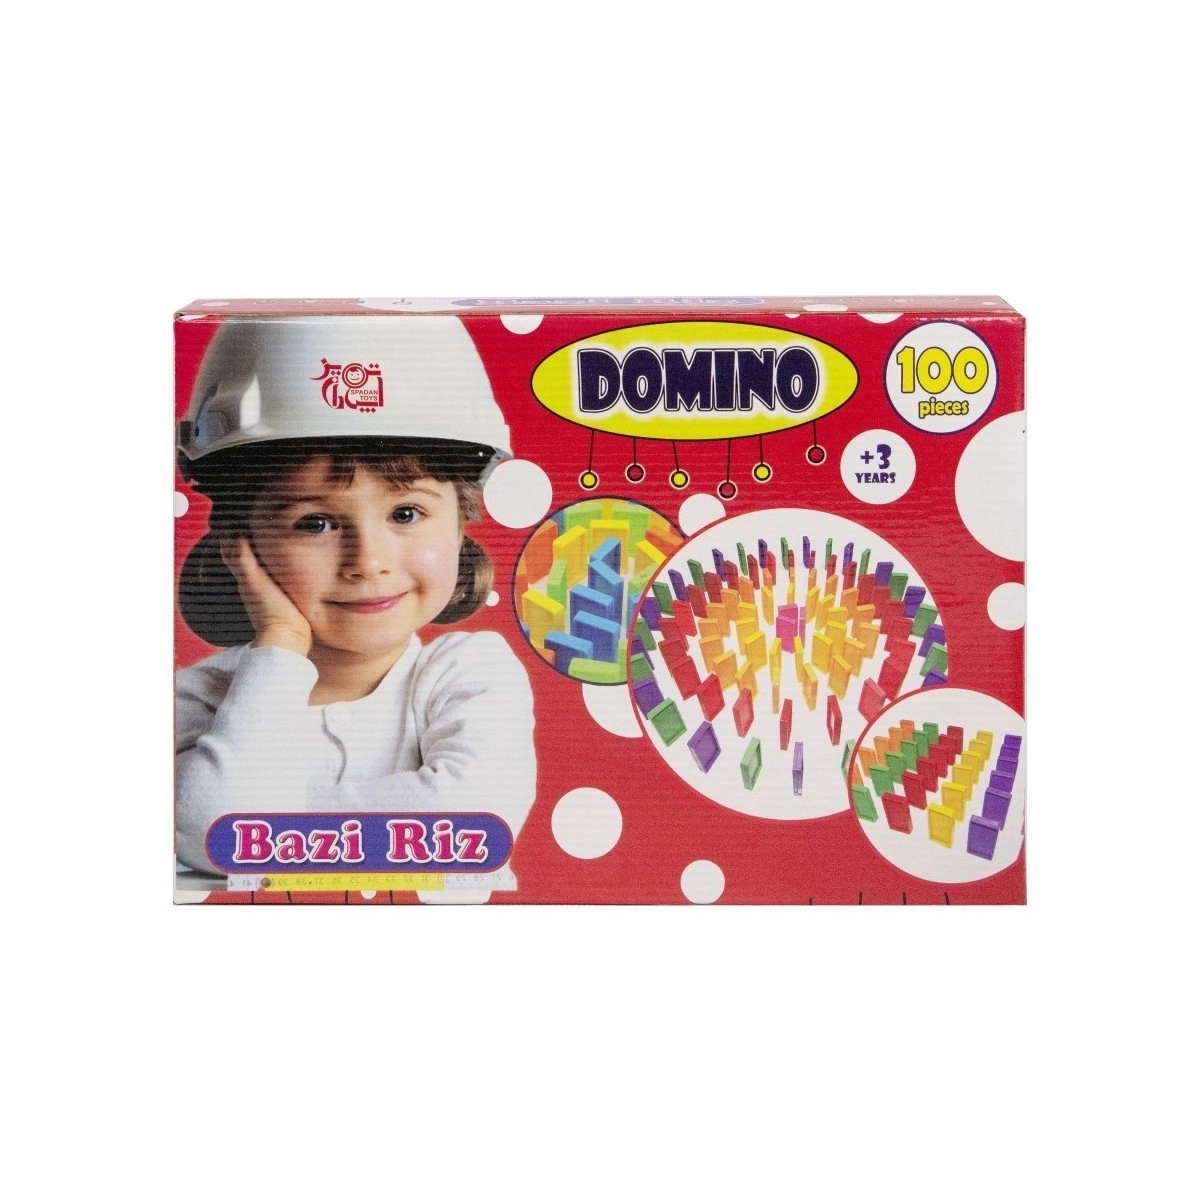 دومینو 100 تکه بازی ریز domino bazi riz